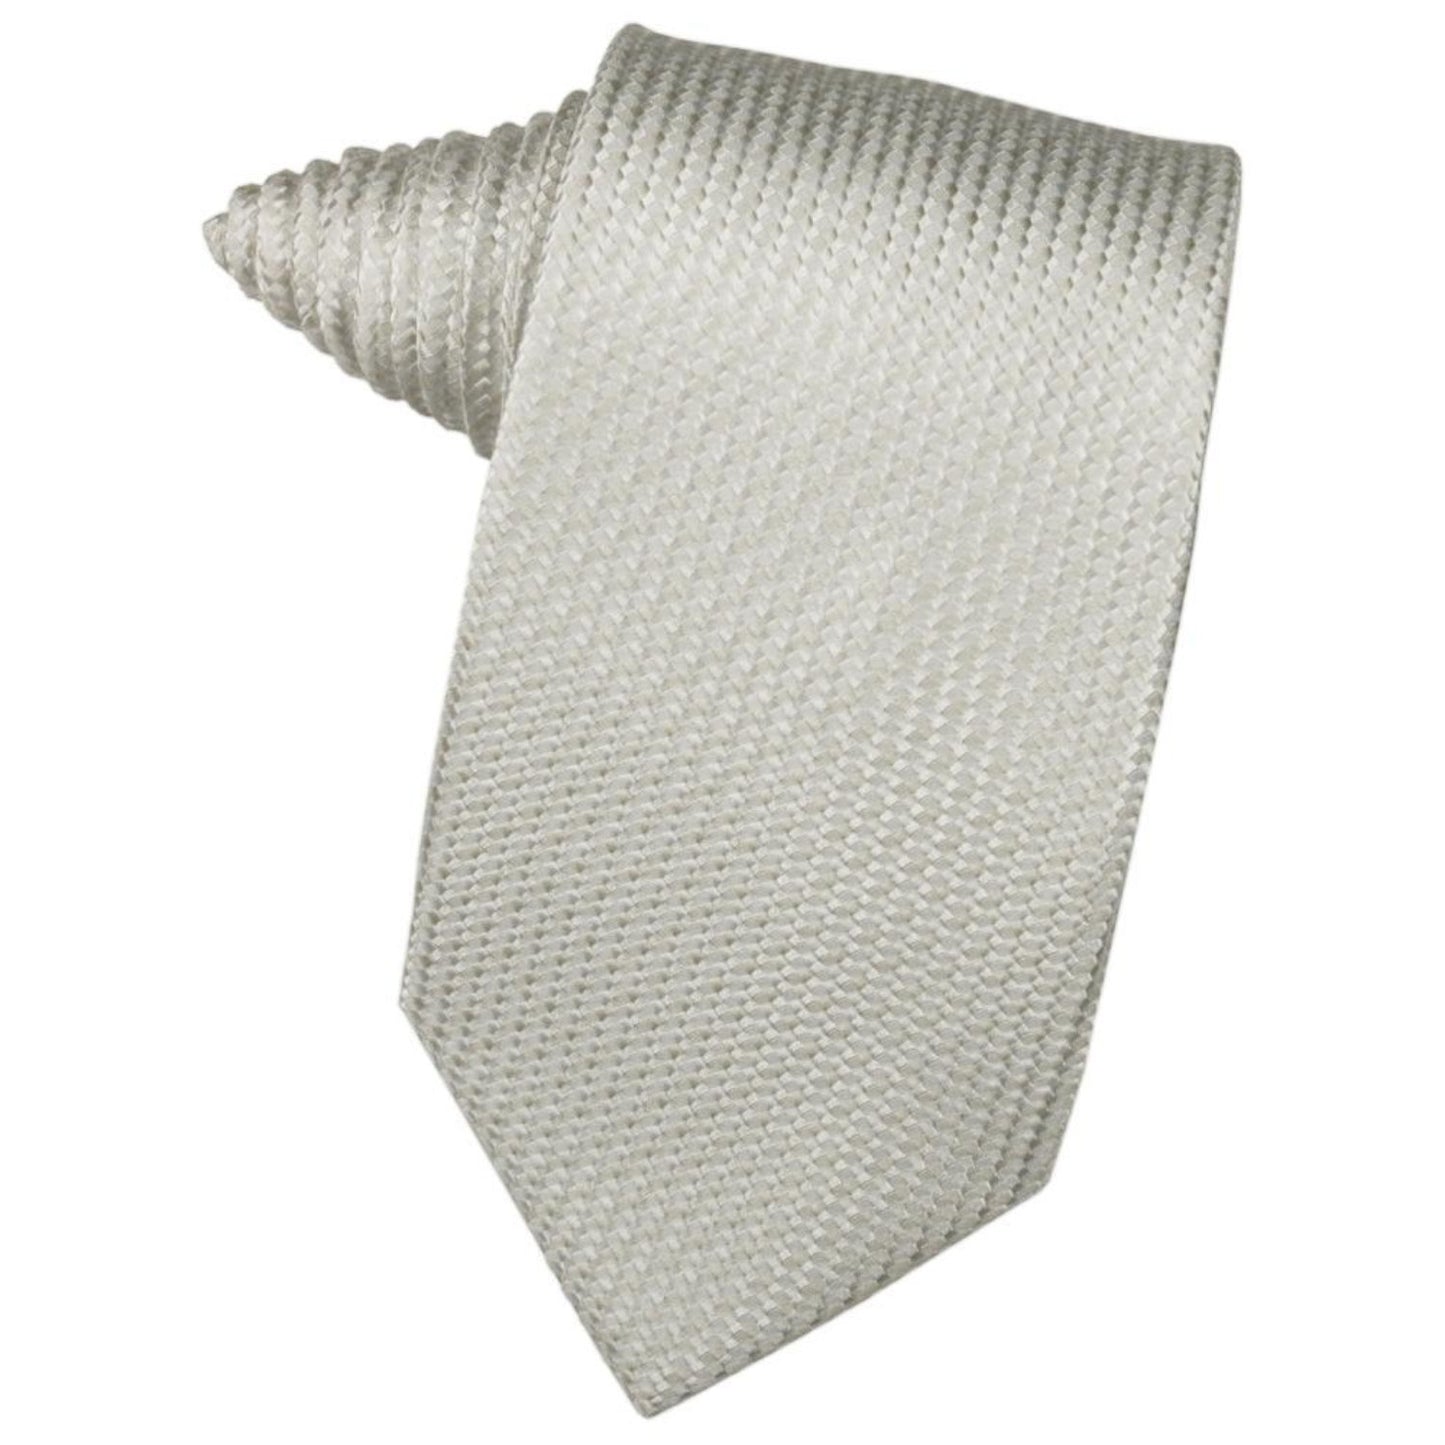 Venetian Self-Tie Necktie